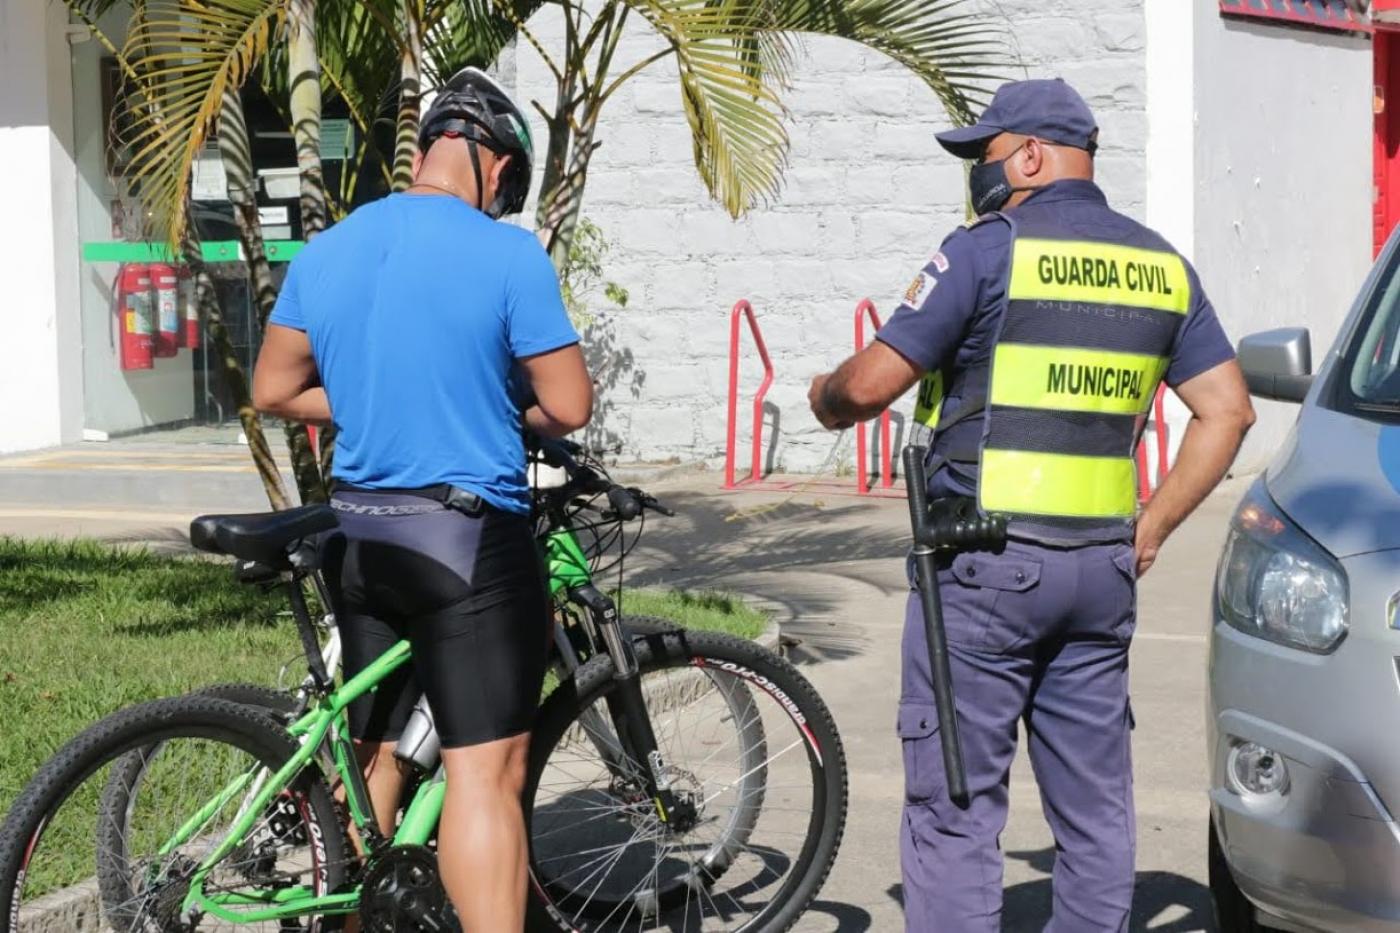 Guarda municipal está ao lado de ciclista. Ambos estão de costas. #Paratodosverem